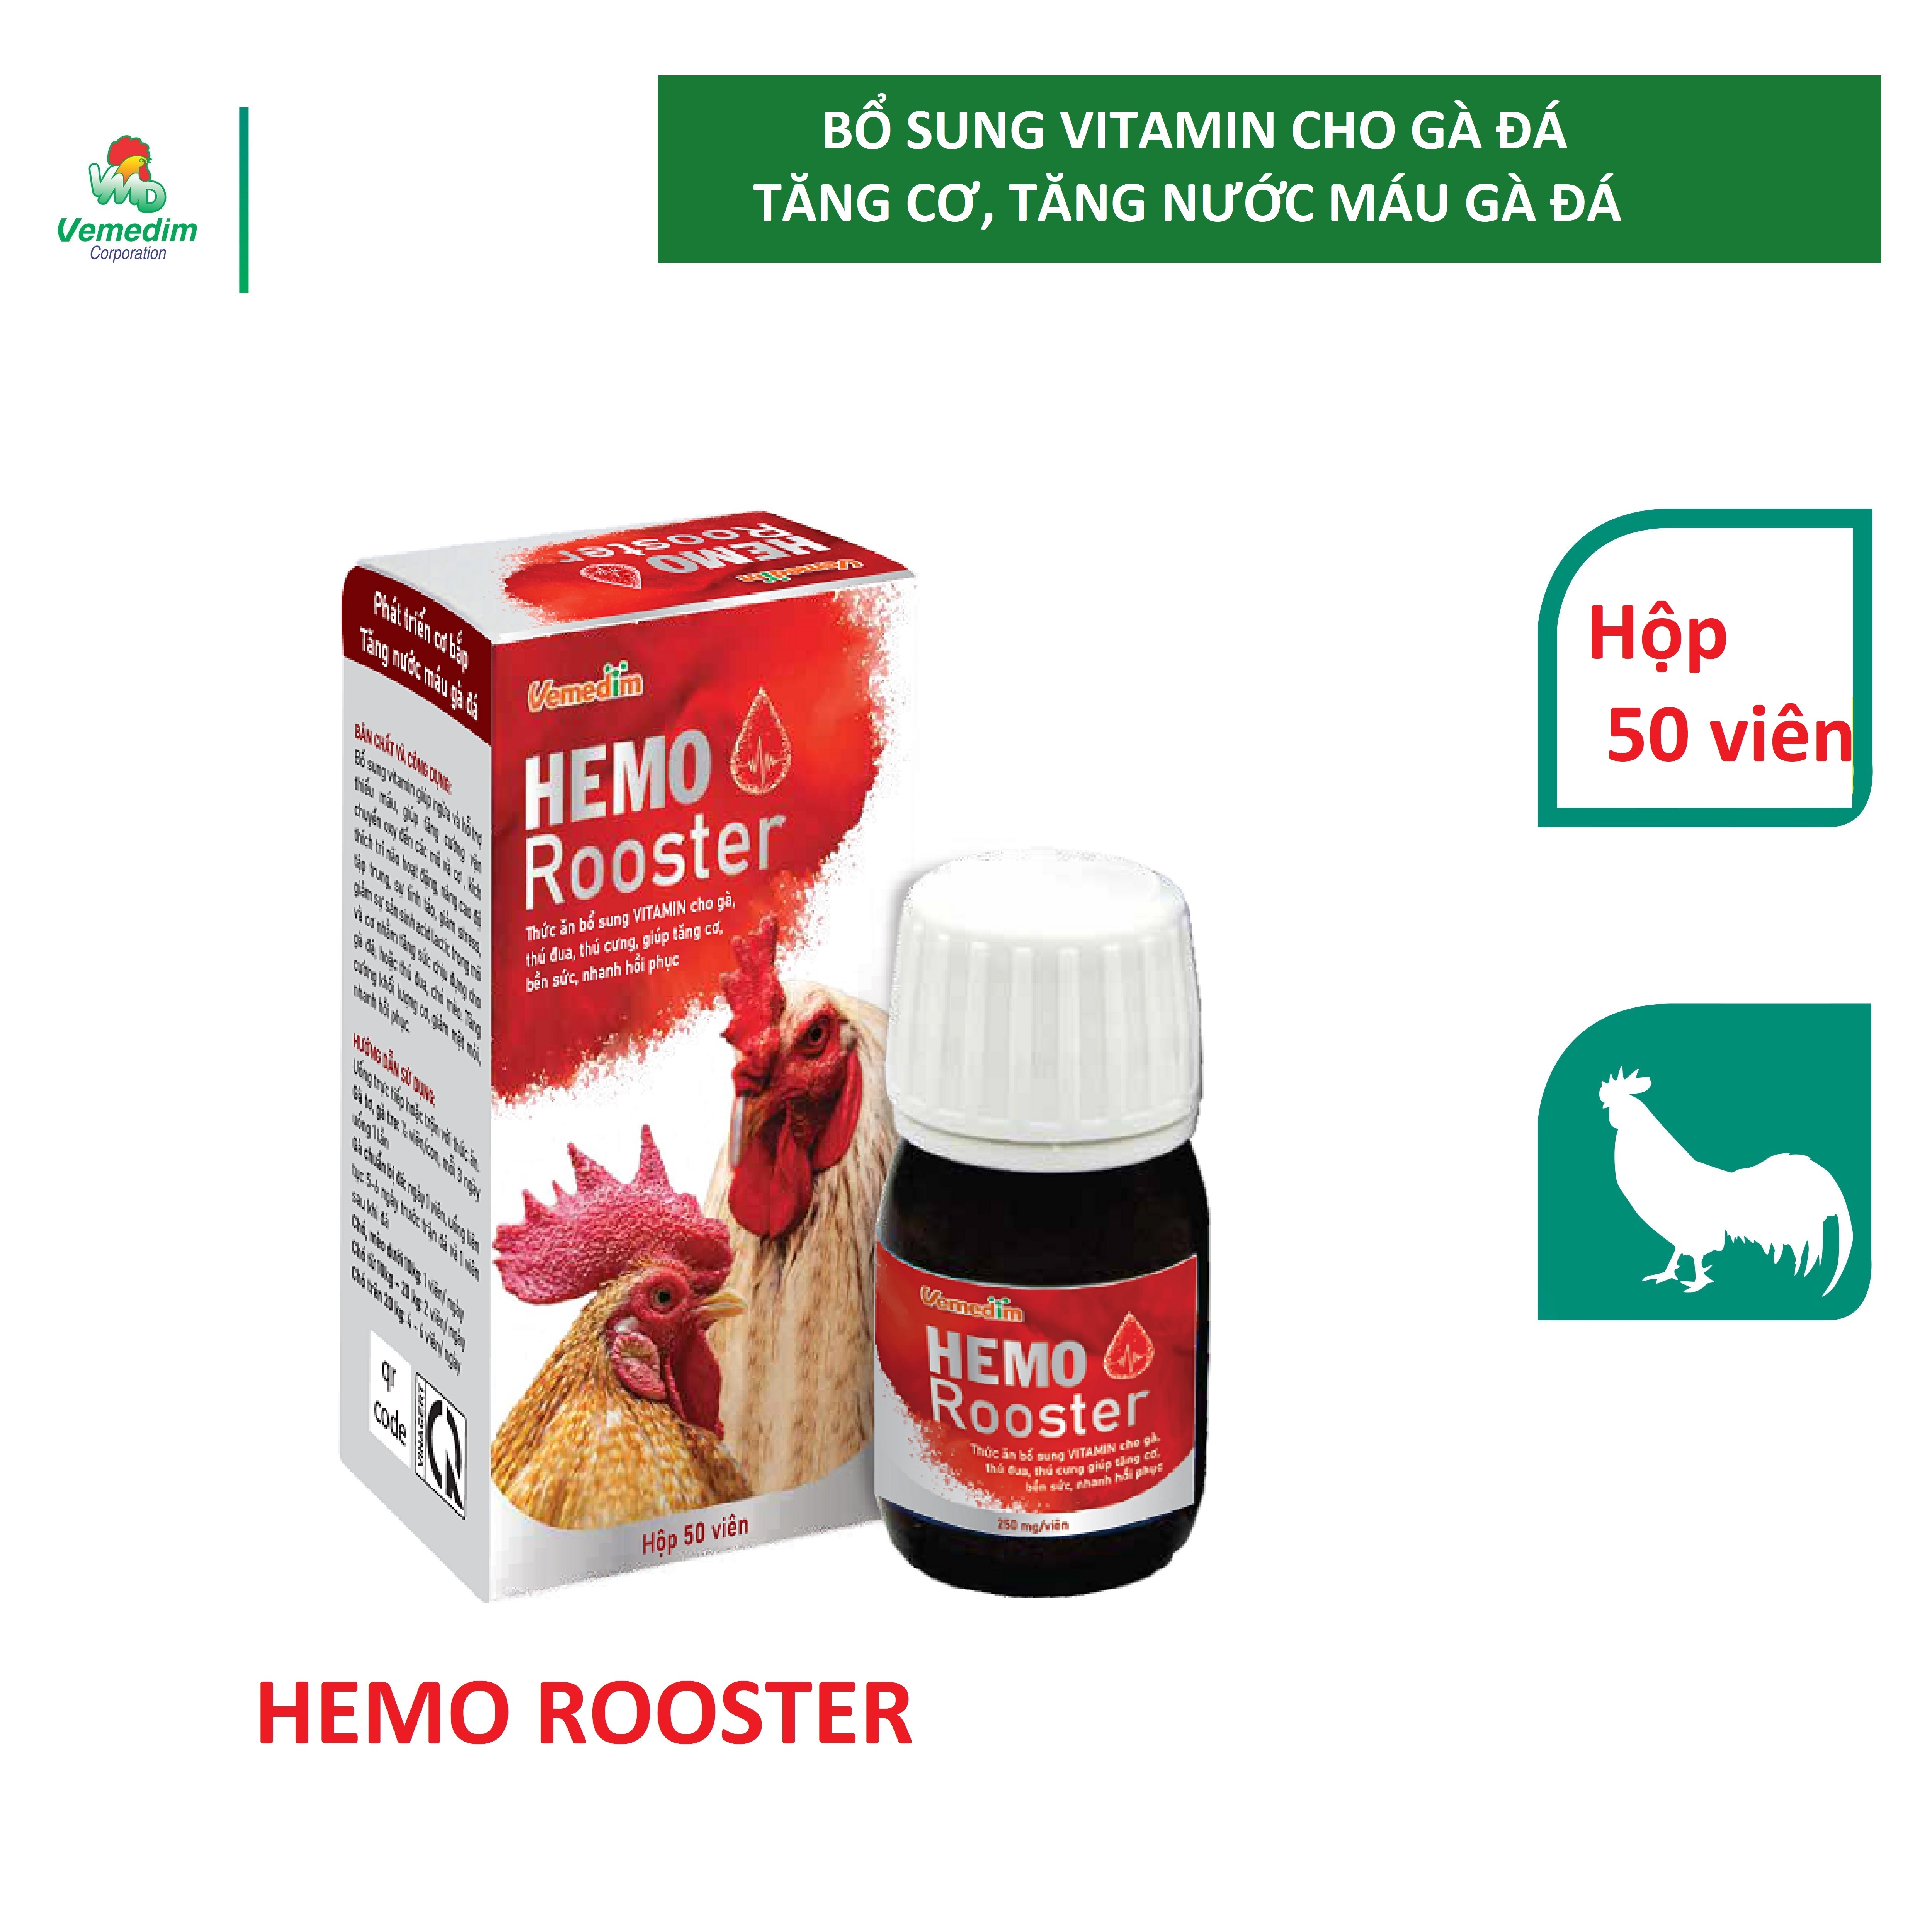 Vemedim Hemo rooster - Bổ sung vitamin cho gà, thú đua, thú cưng, giúp tăng cơ, bền sức, nhanh hồi phục, hộp 50 viên